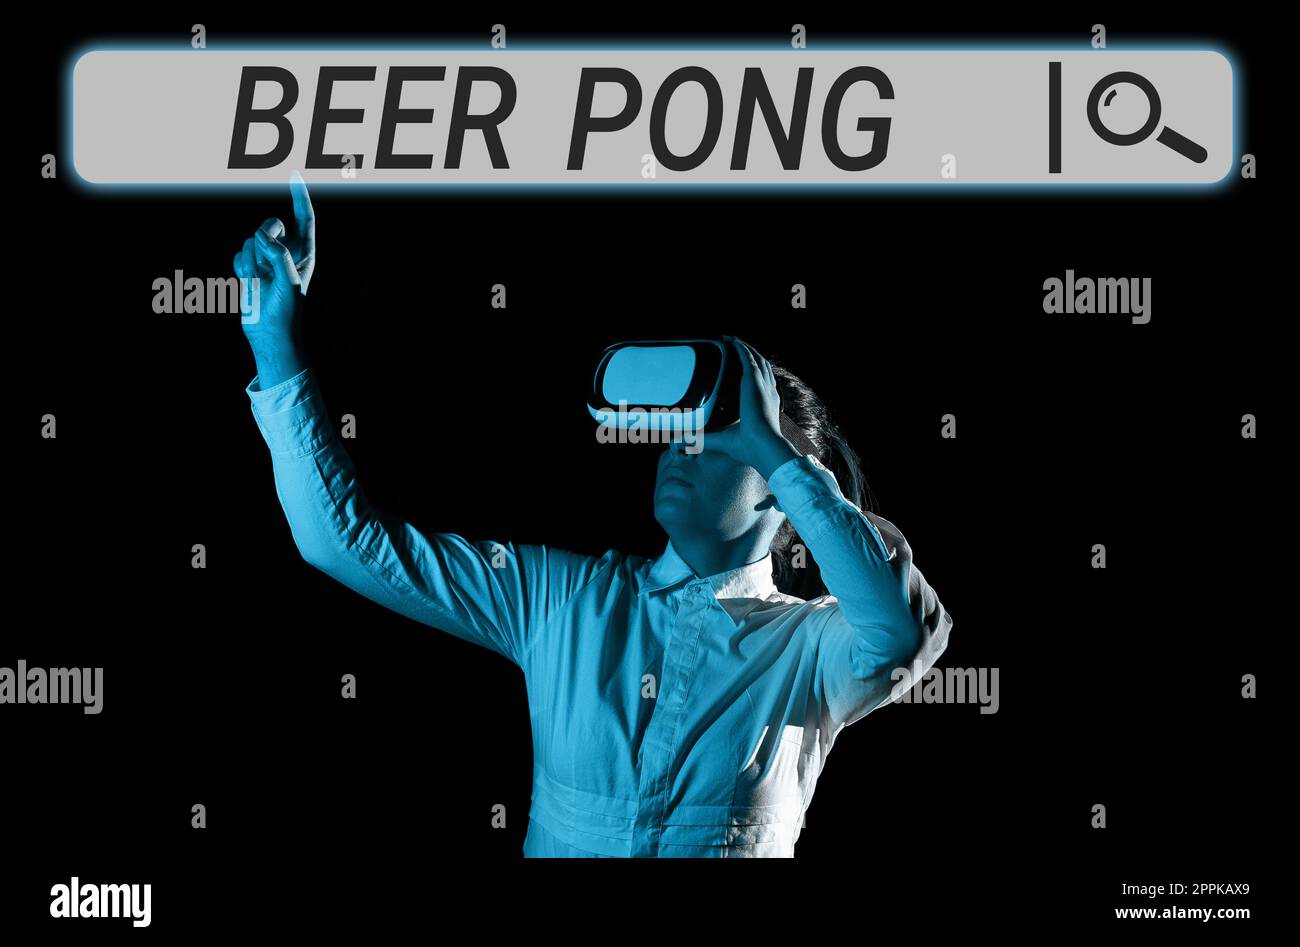 Inspiration montrant le signe Beer pong. Concept c'est-à-dire un jeu avec un ensemble de tasses contenant de la bière et rebondir ou lancer une boule de ping-pong Banque D'Images